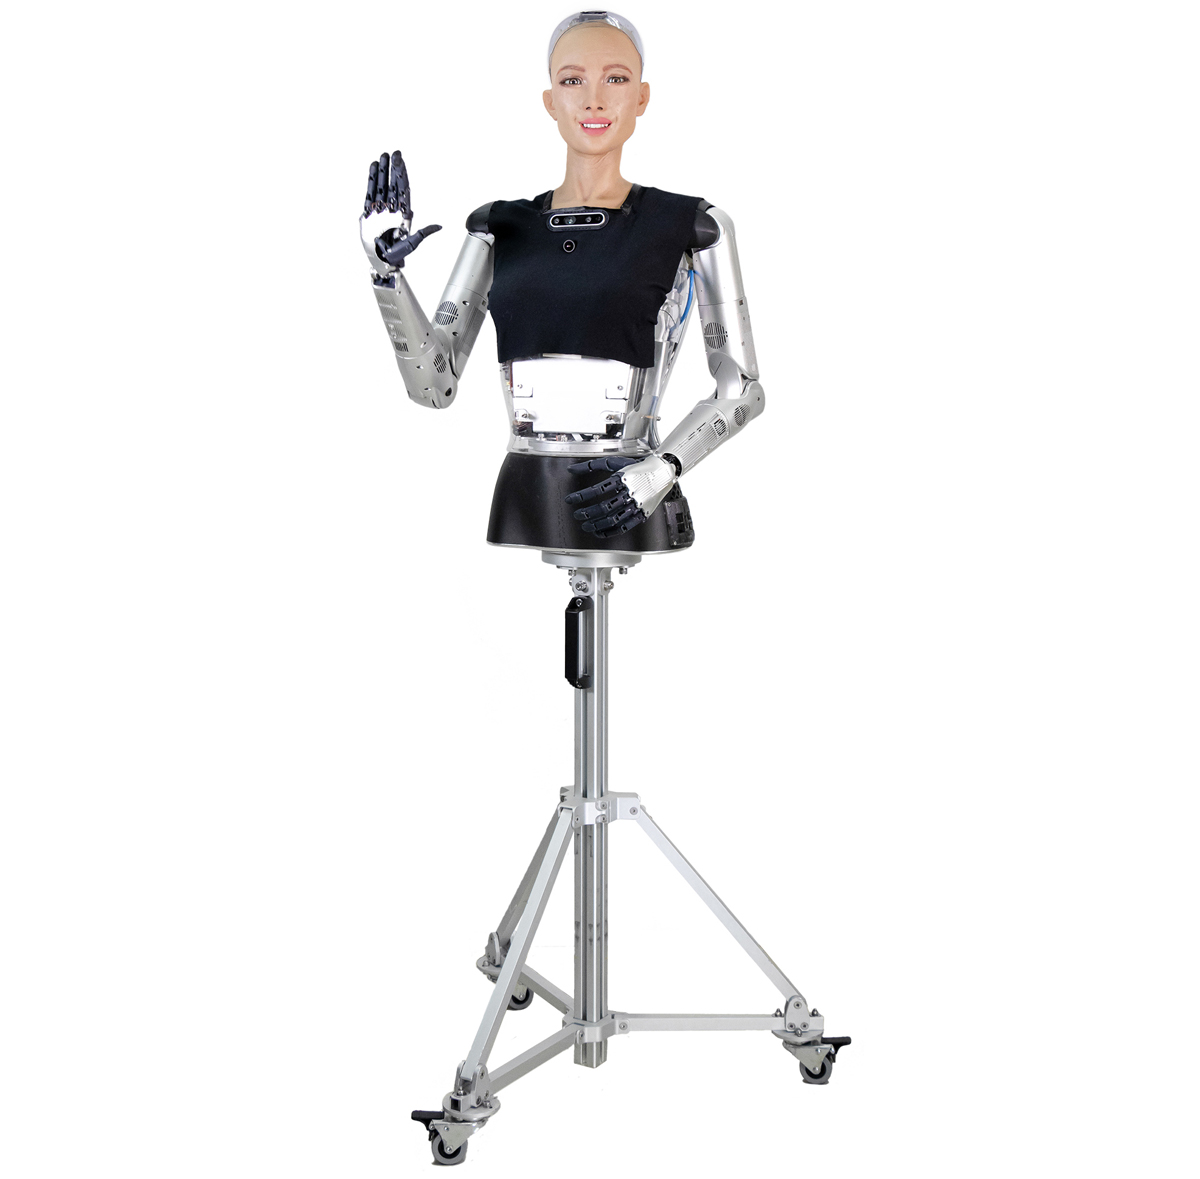 version R&D de Hanson Robotics Sophia 2020 - Cliquez pour agrandir